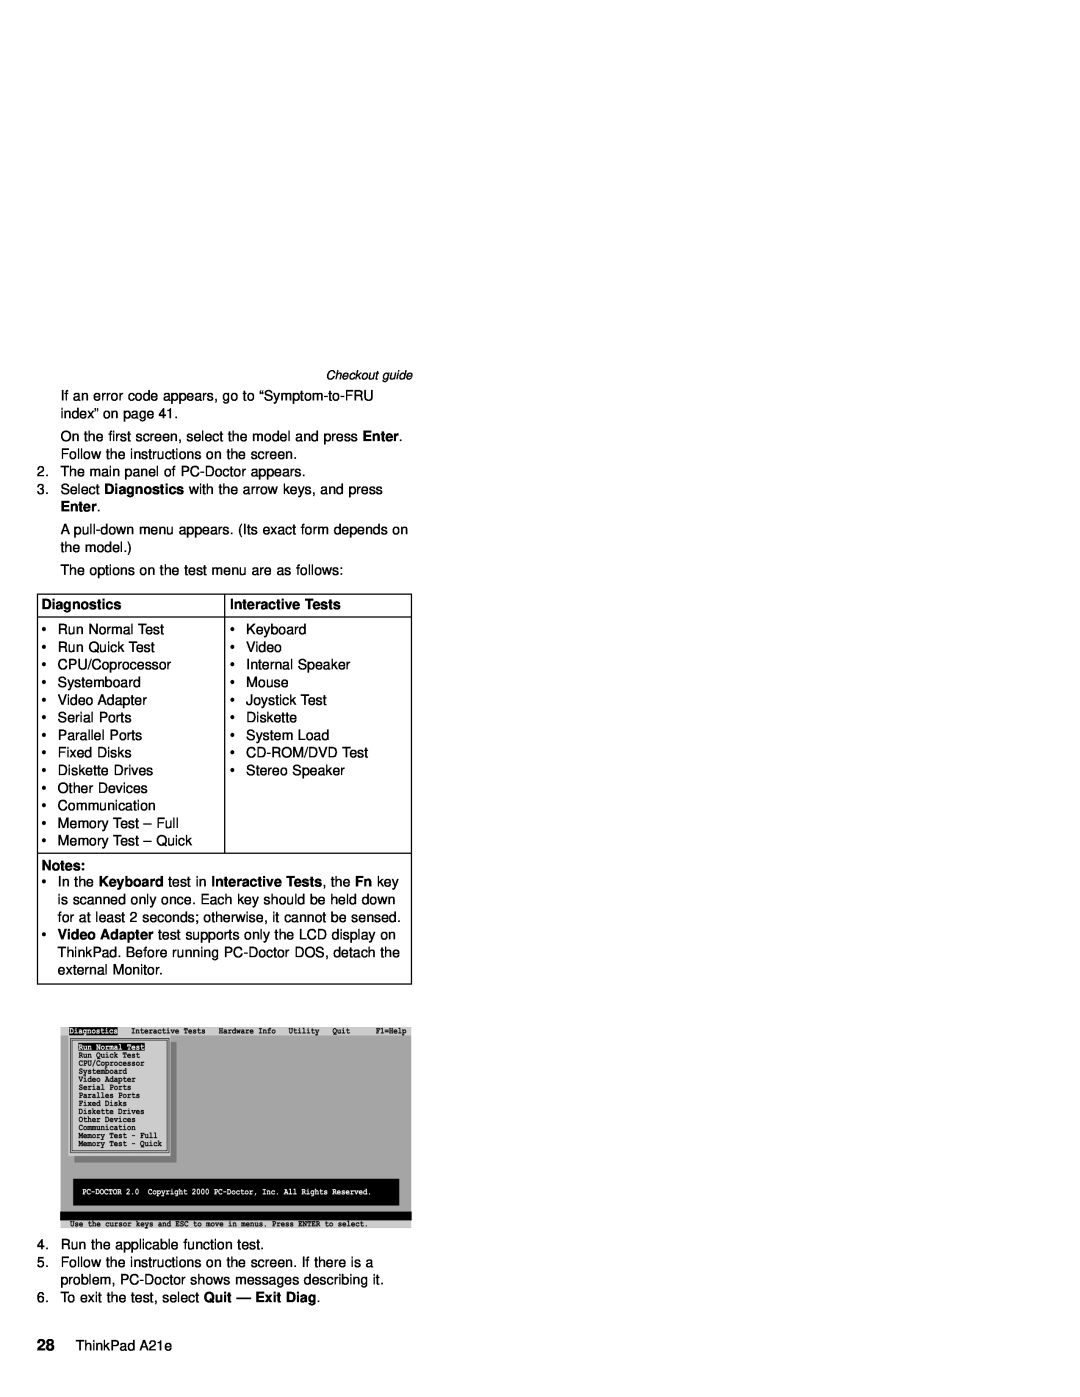 IBM MT 2632 manual Diagnostics, Interactive Tests 